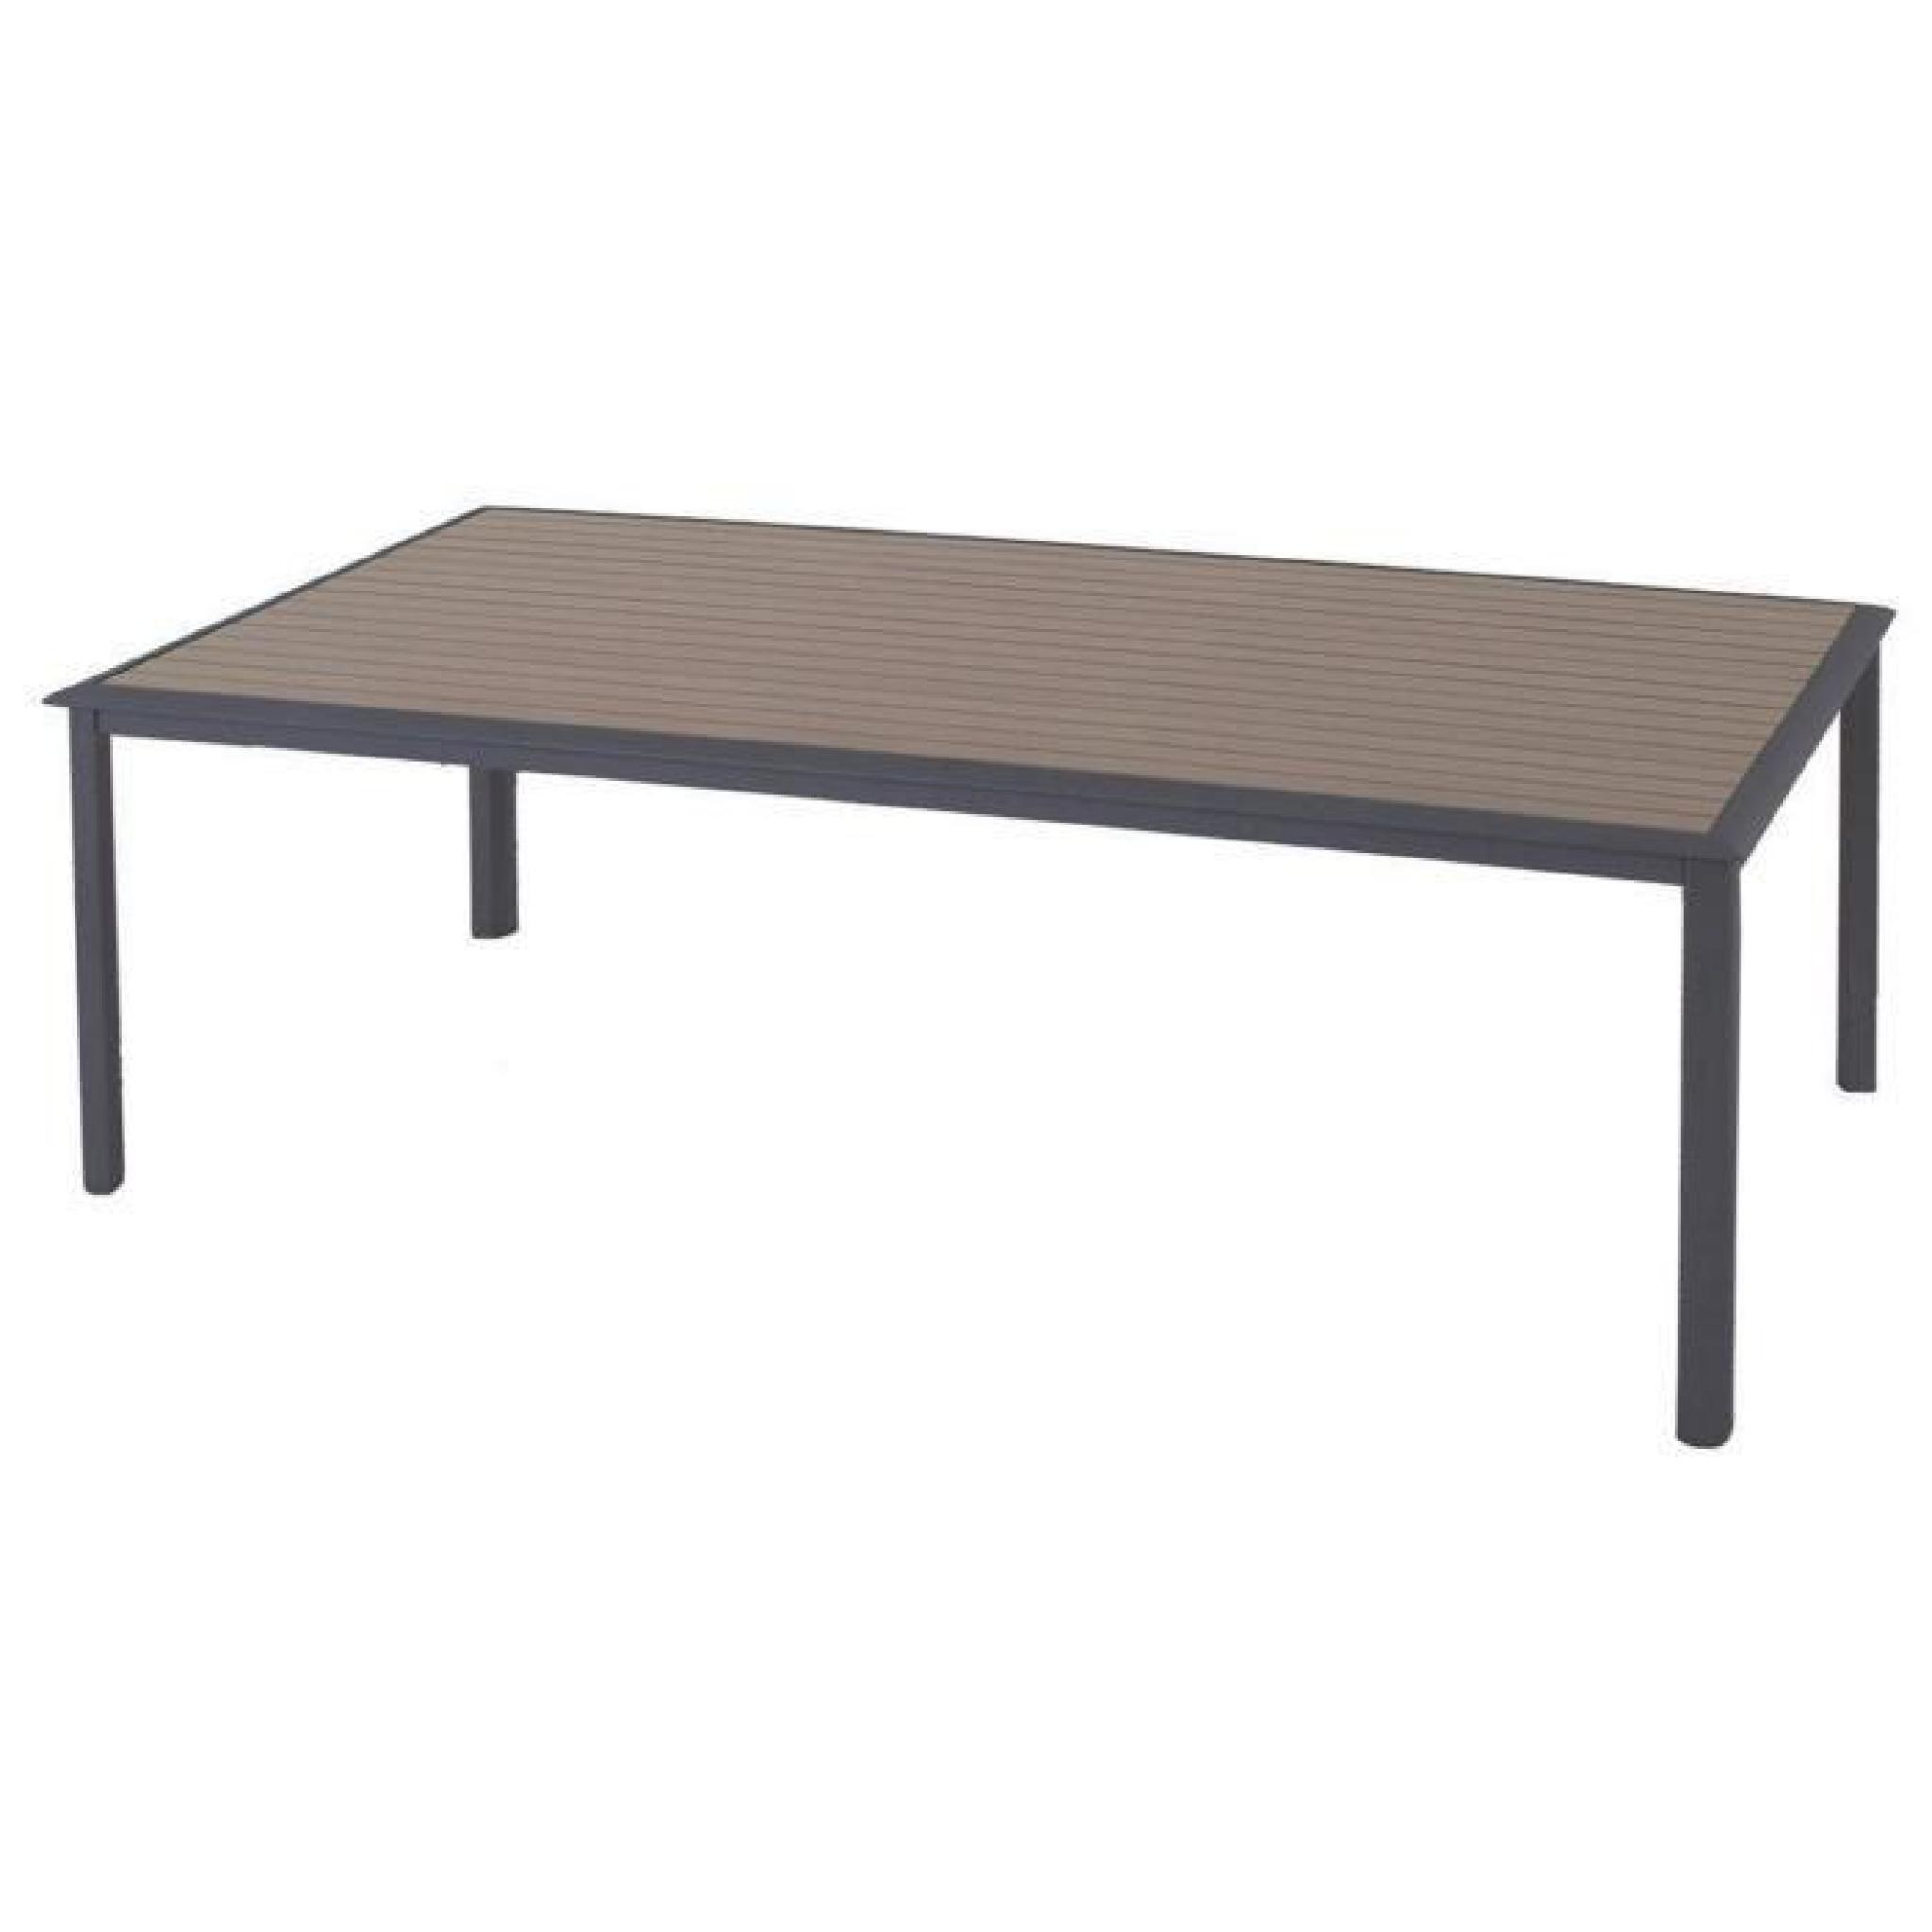 Table rectangle en Aluminium anthracite et plateau à lattes taupe - Dim : L 218 x P 118 x H 74 cm 